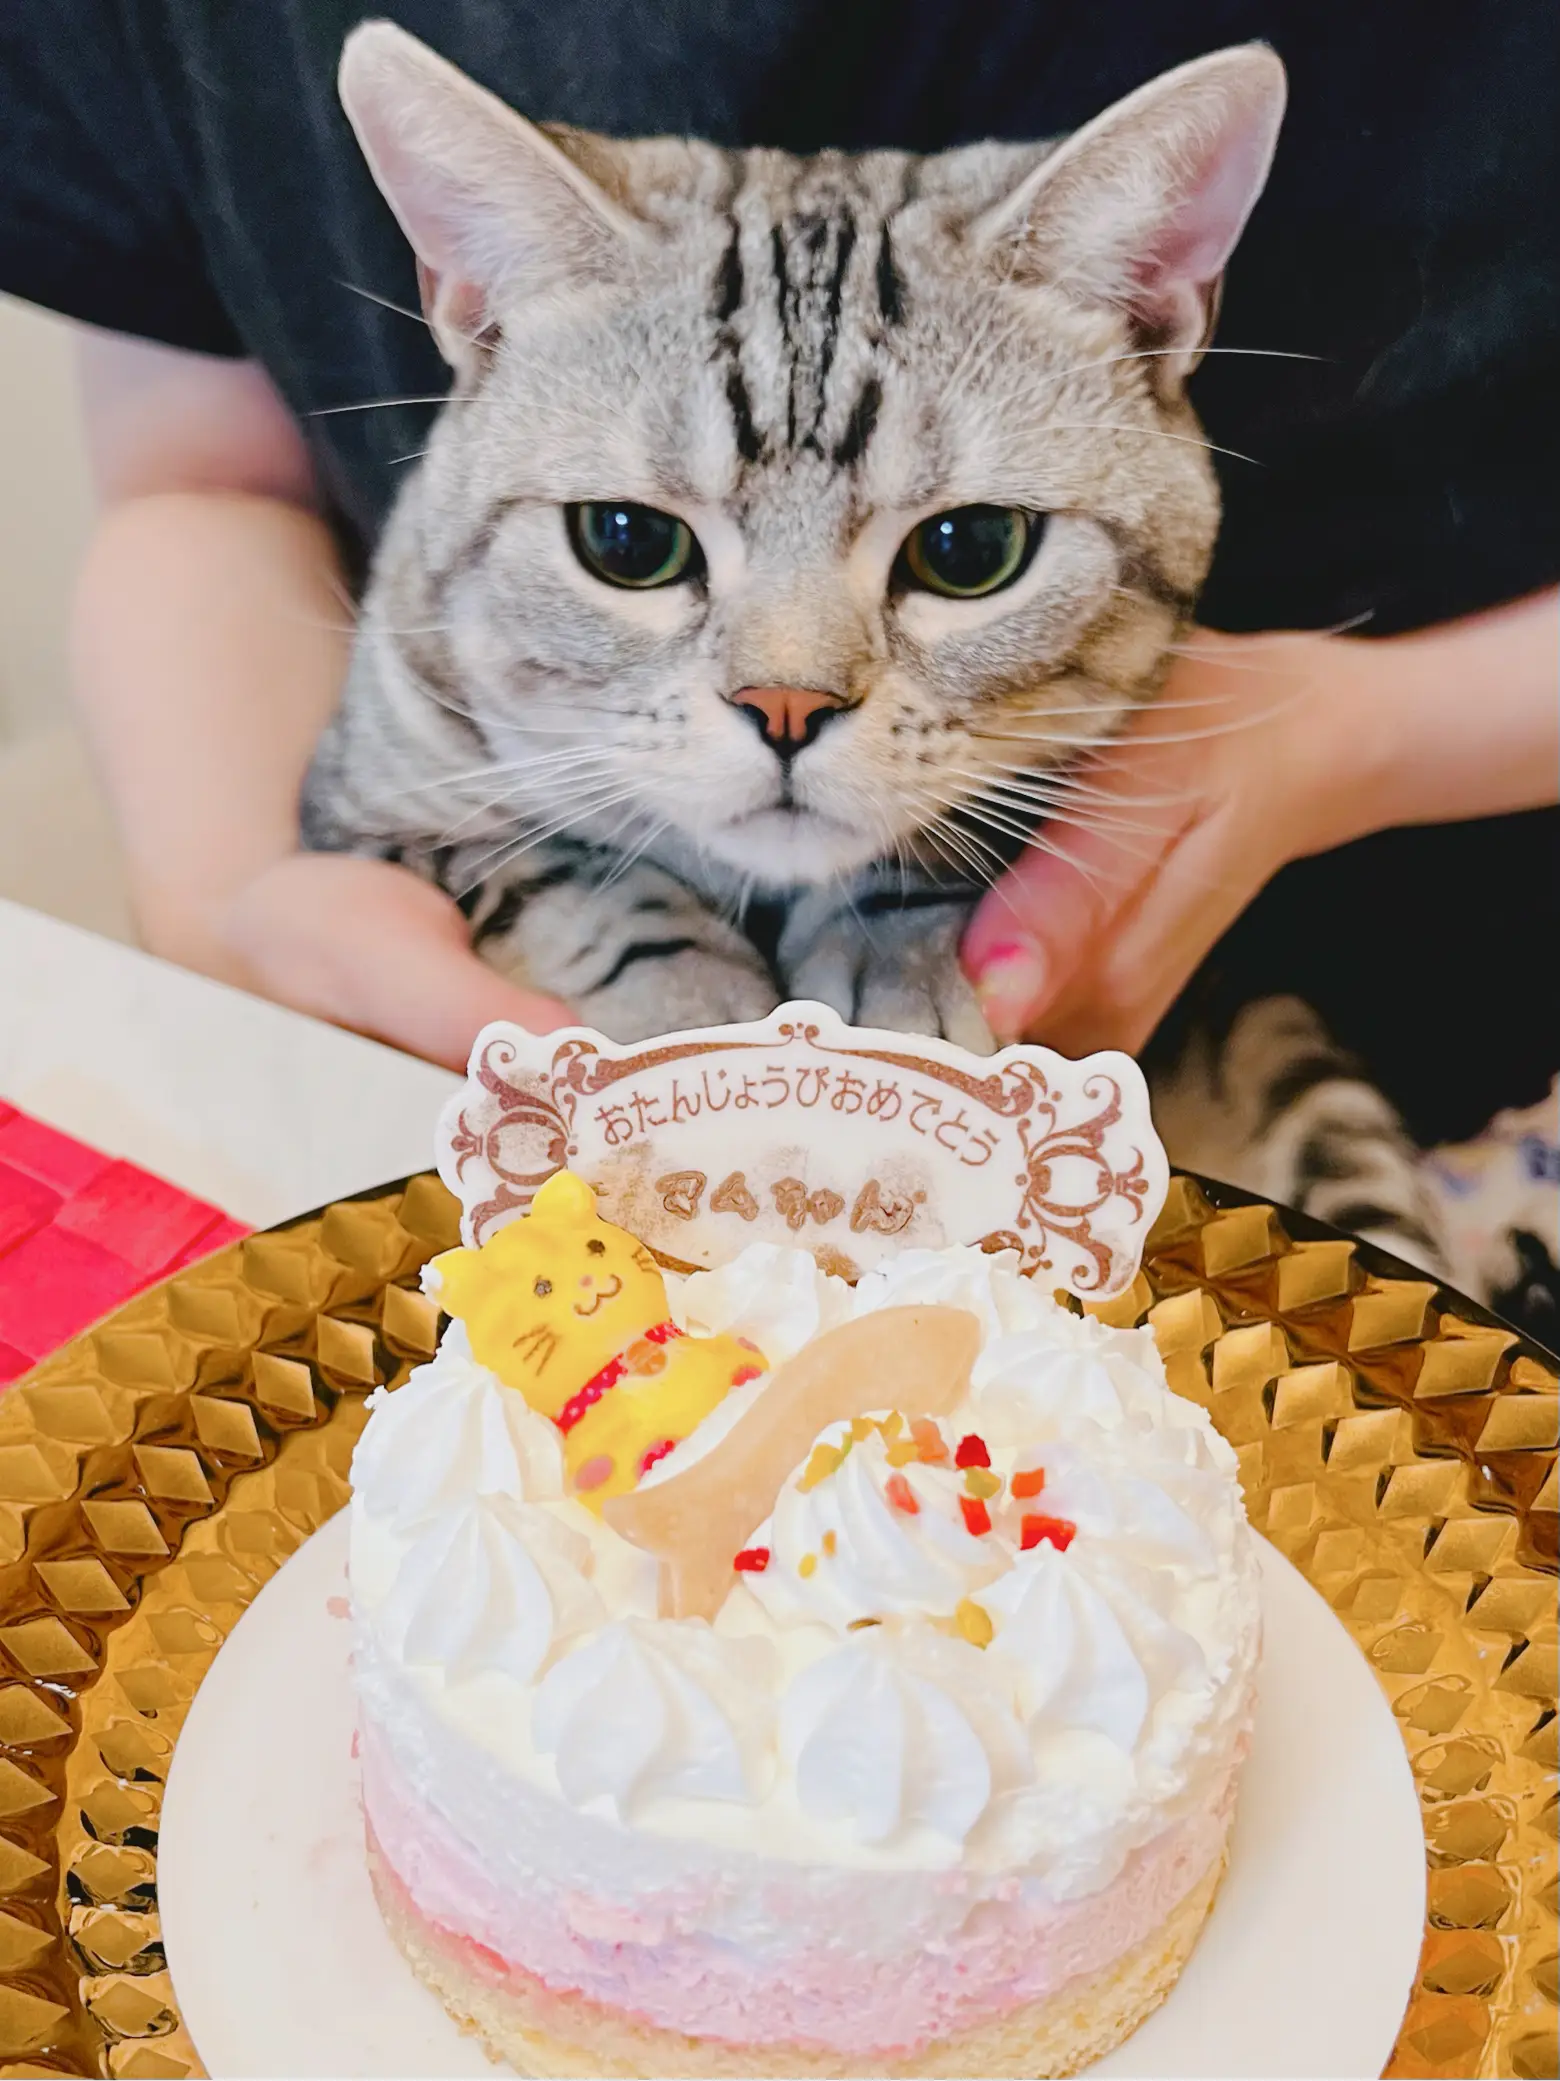 猫お誕生日に関する最新の人気投稿 Lemon8